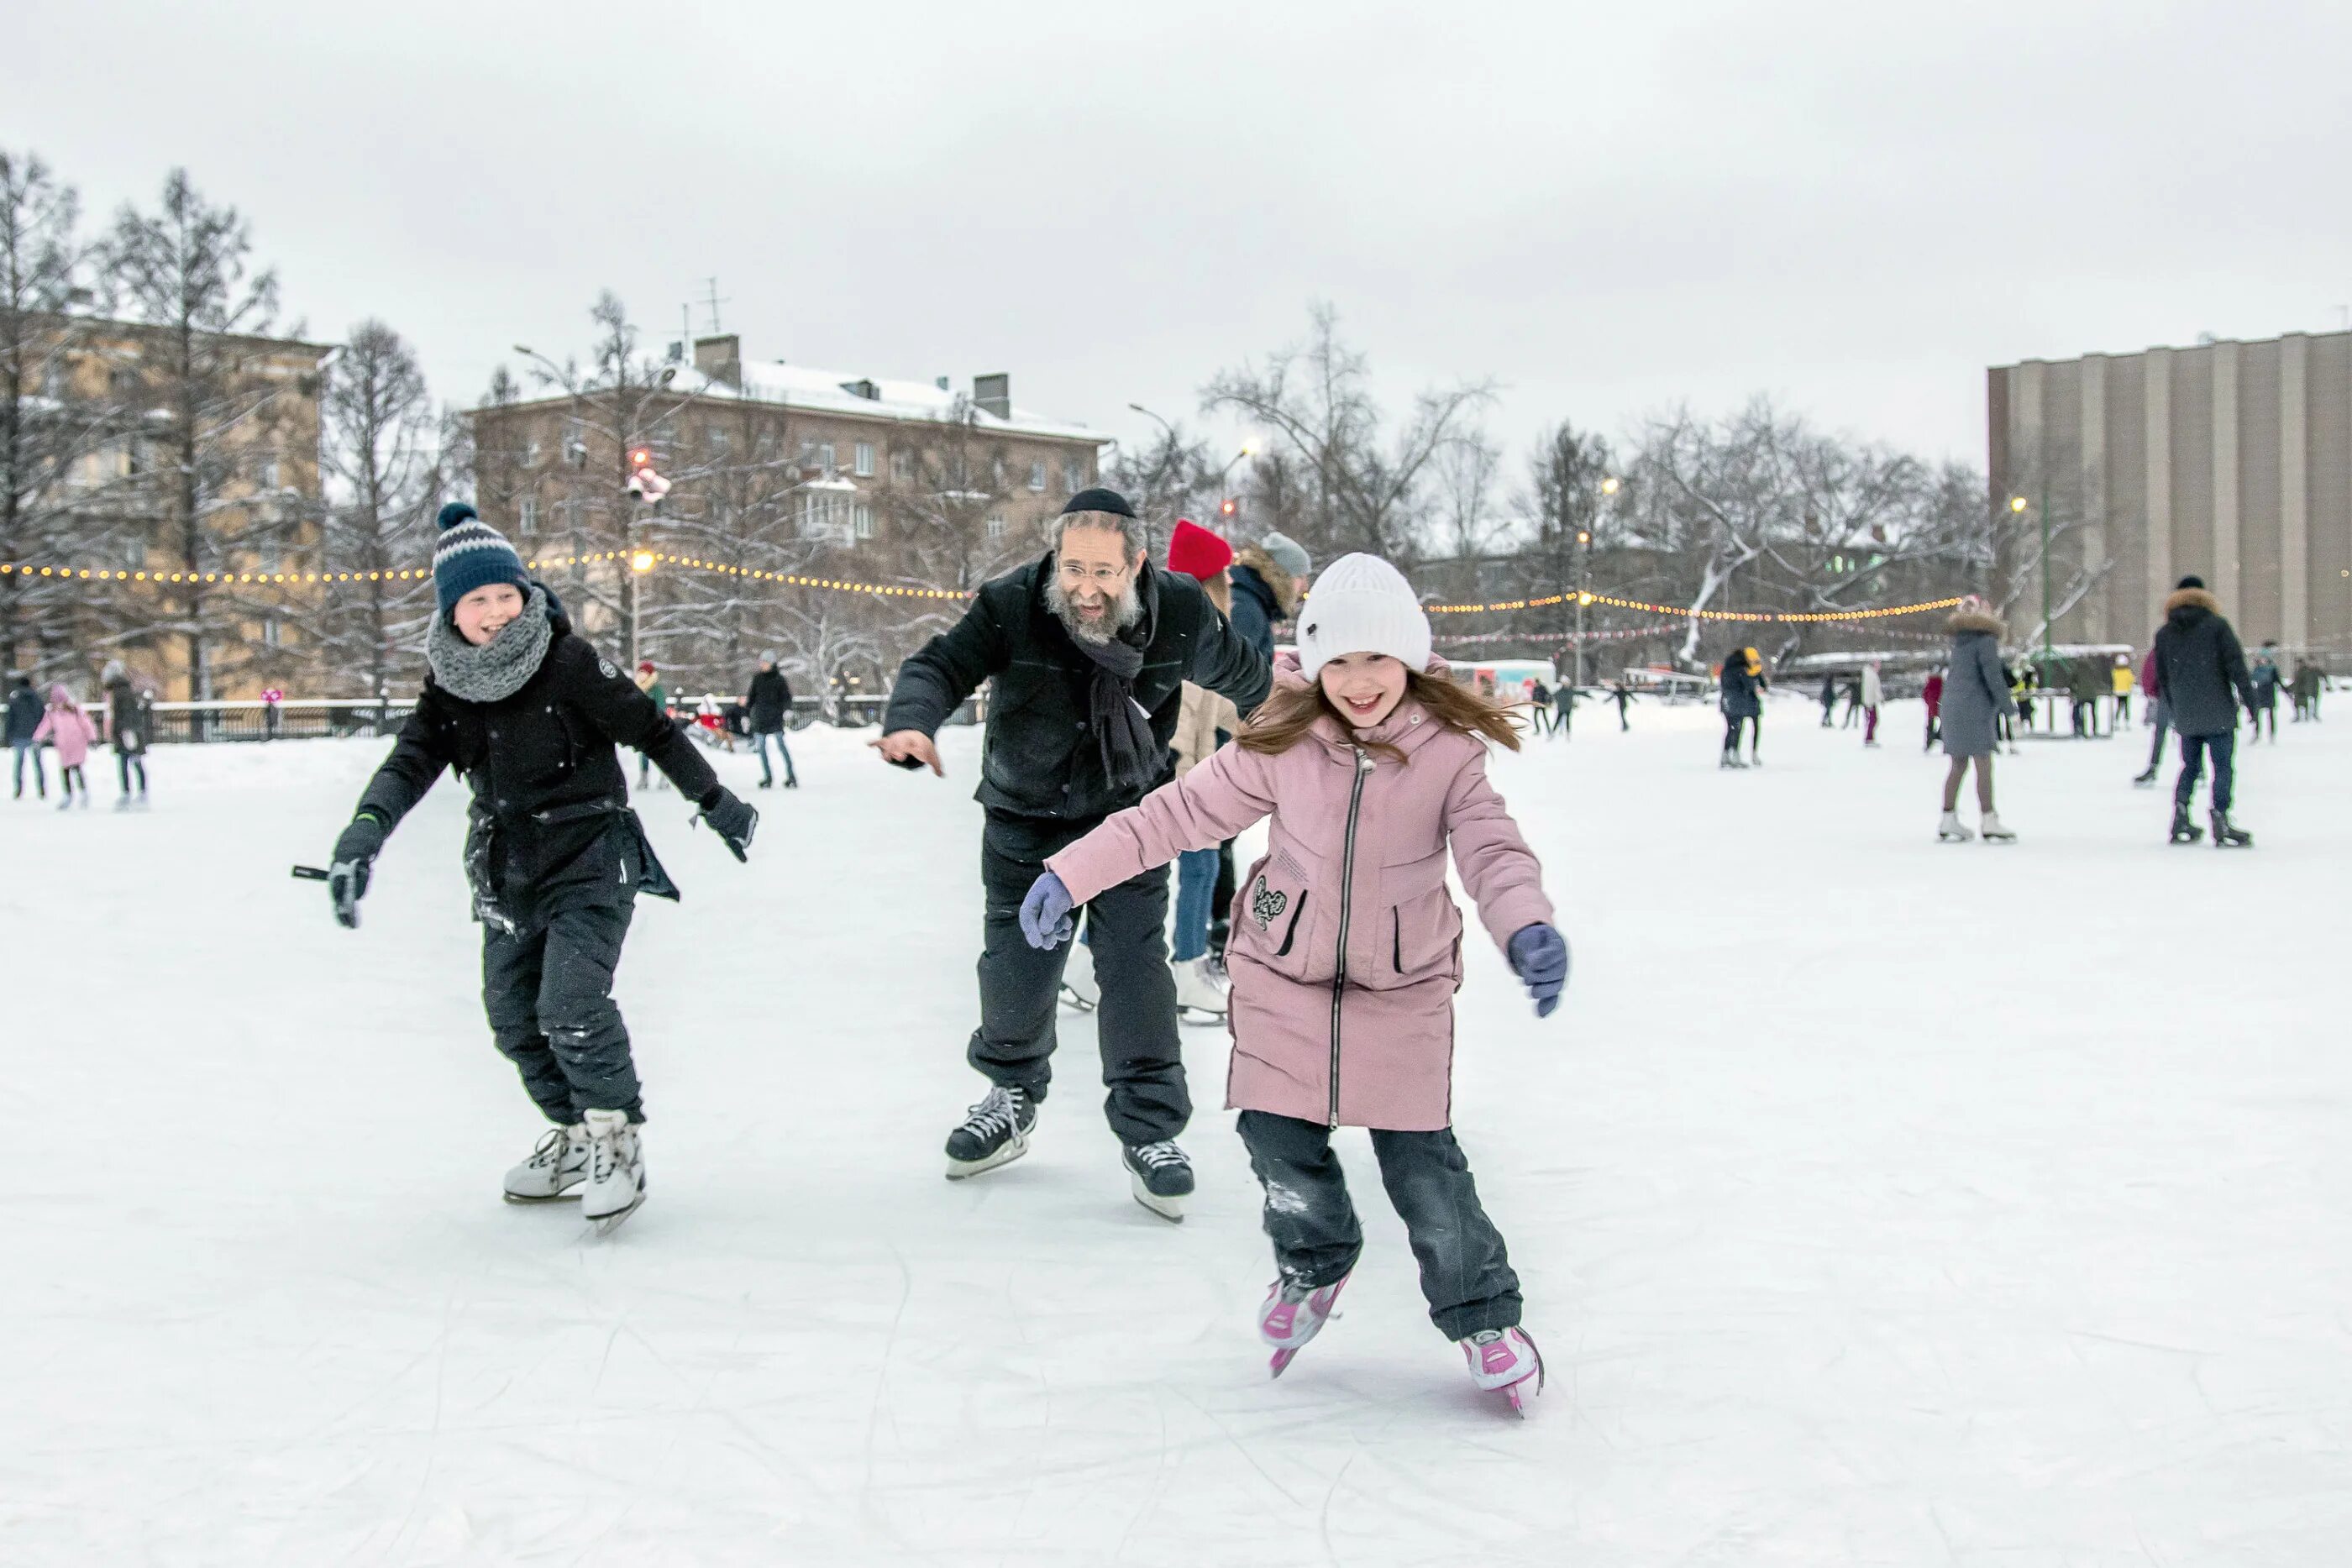 Катание на коньках. Дети катаются на коньках. Кататься на коньках зимой. Катание на коньках дети. Можно покататься на катке